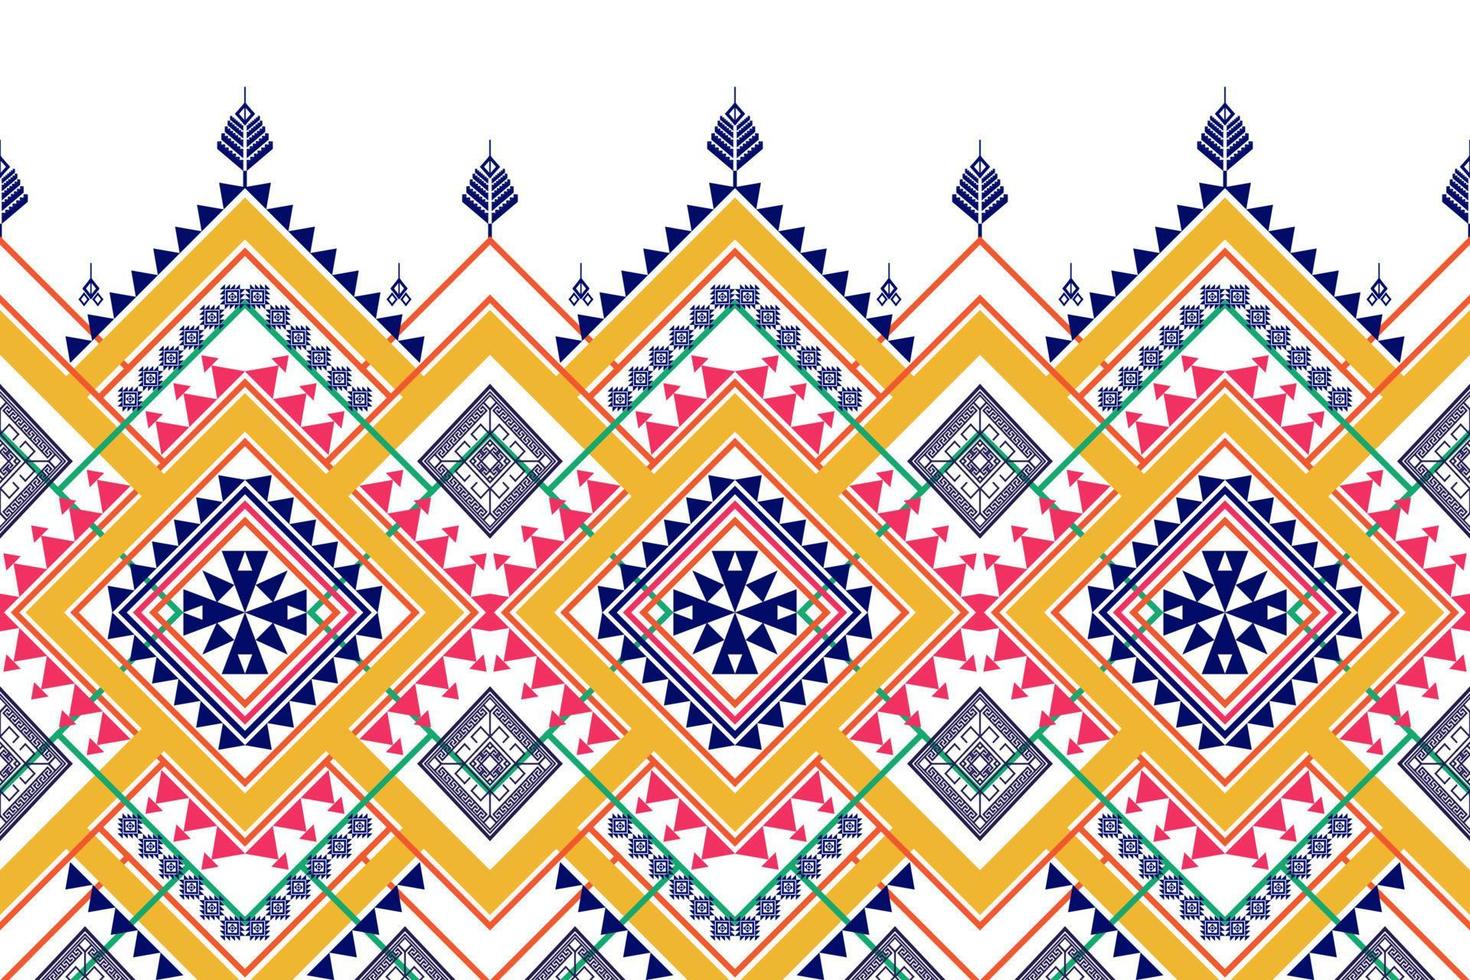 conception de modèle sans couture ethnique géométrique. tapis en tissu aztèque ornement mandala chevron décoration textile papier peint. fond d'ornement de broderie traditionnelle indienne africaine de dinde tribale vecteur